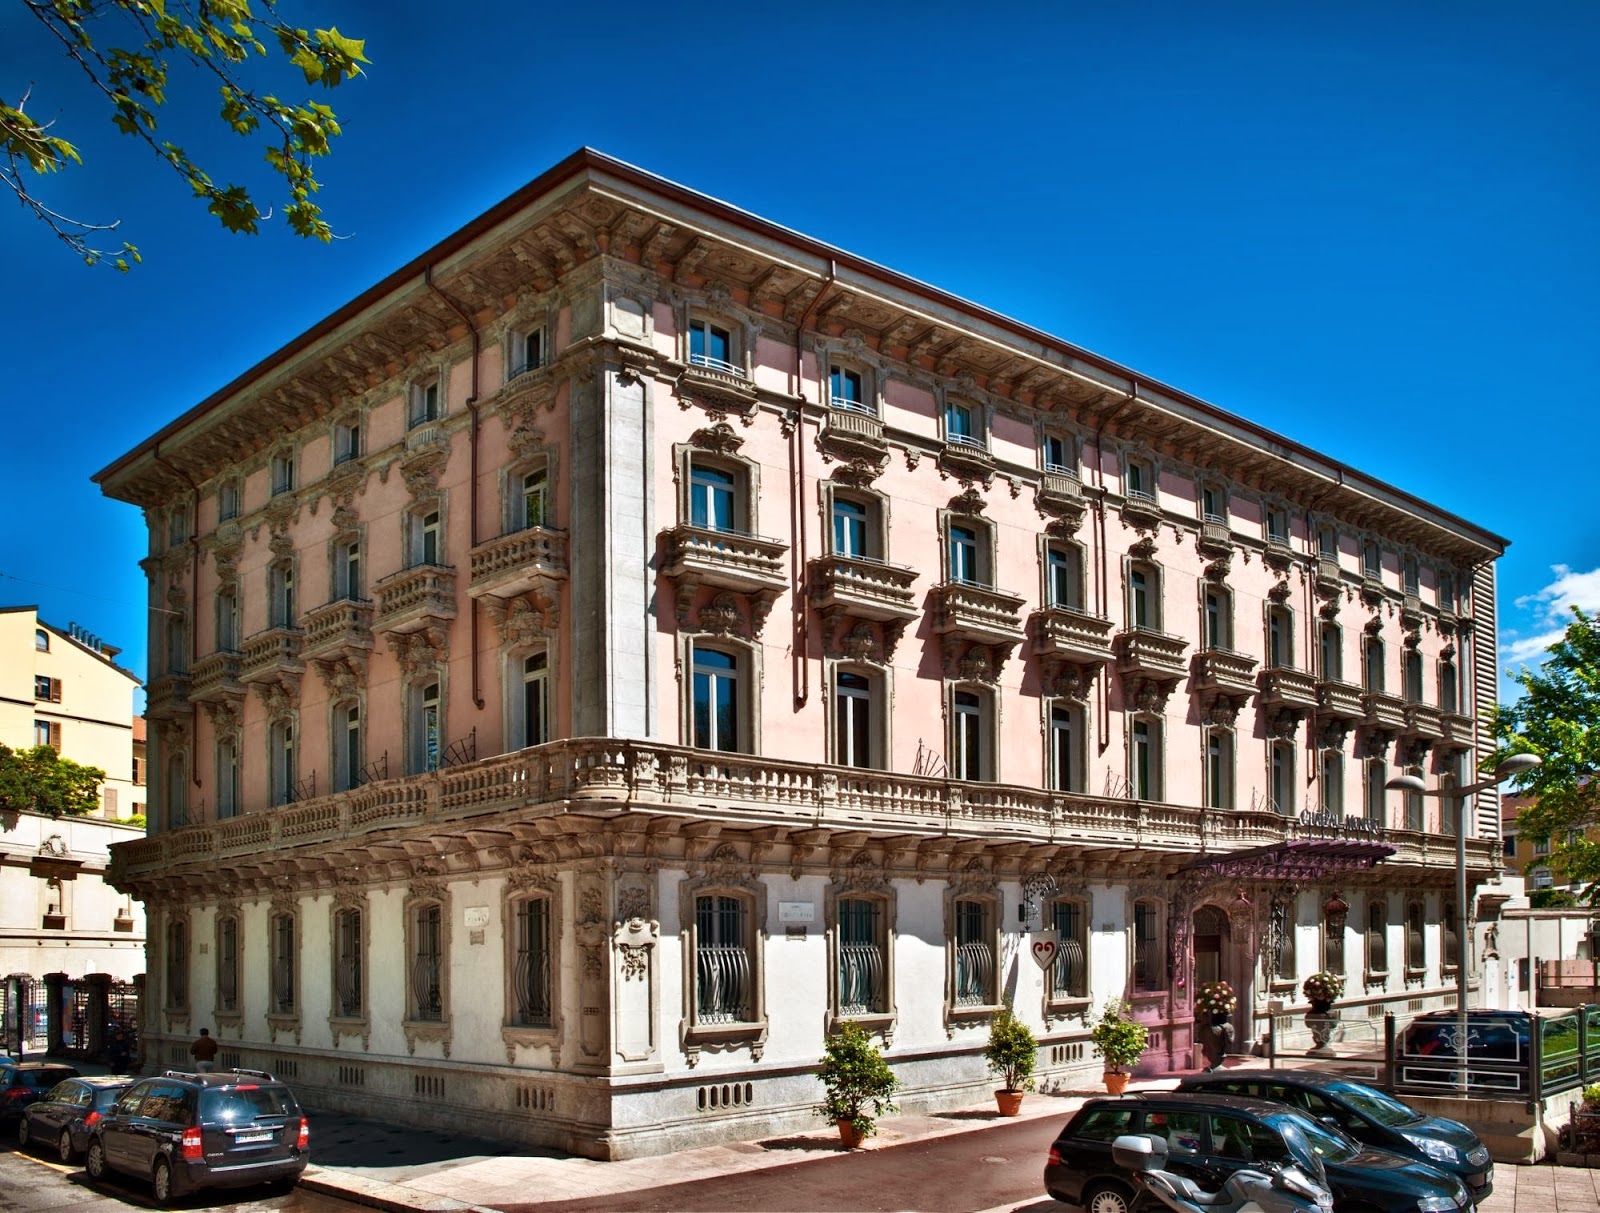 Milano (Italia) - Chateau Monfort 5* - Hotel da Sogno 